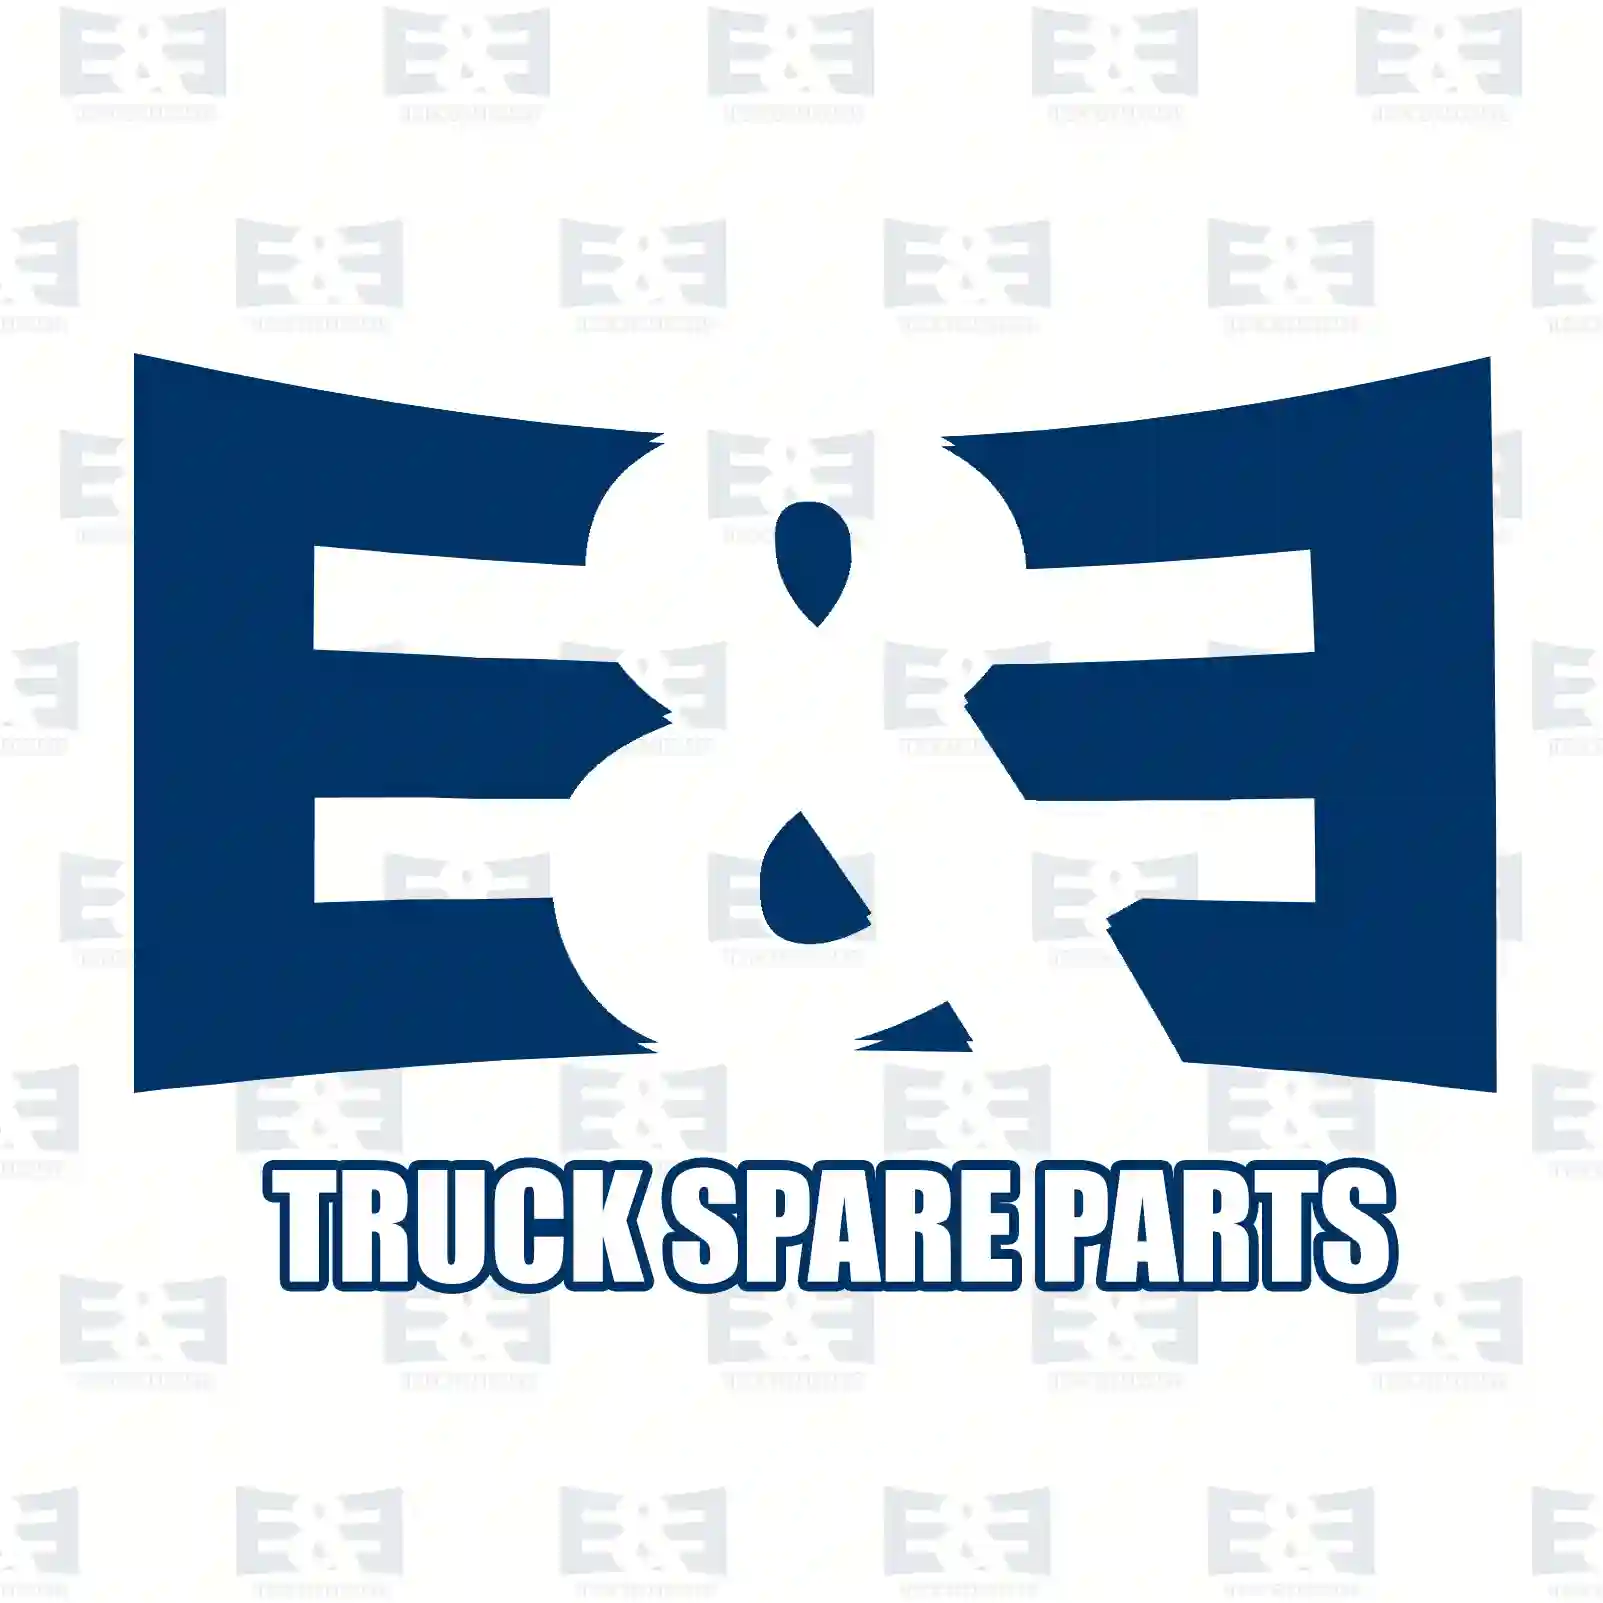 Shock absorber, 2E2283165, 0053268900, 3573200431, , , ||  2E2283165 E&E Truck Spare Parts | Truck Spare Parts, Auotomotive Spare Parts Shock absorber, 2E2283165, 0053268900, 3573200431, , , ||  2E2283165 E&E Truck Spare Parts | Truck Spare Parts, Auotomotive Spare Parts